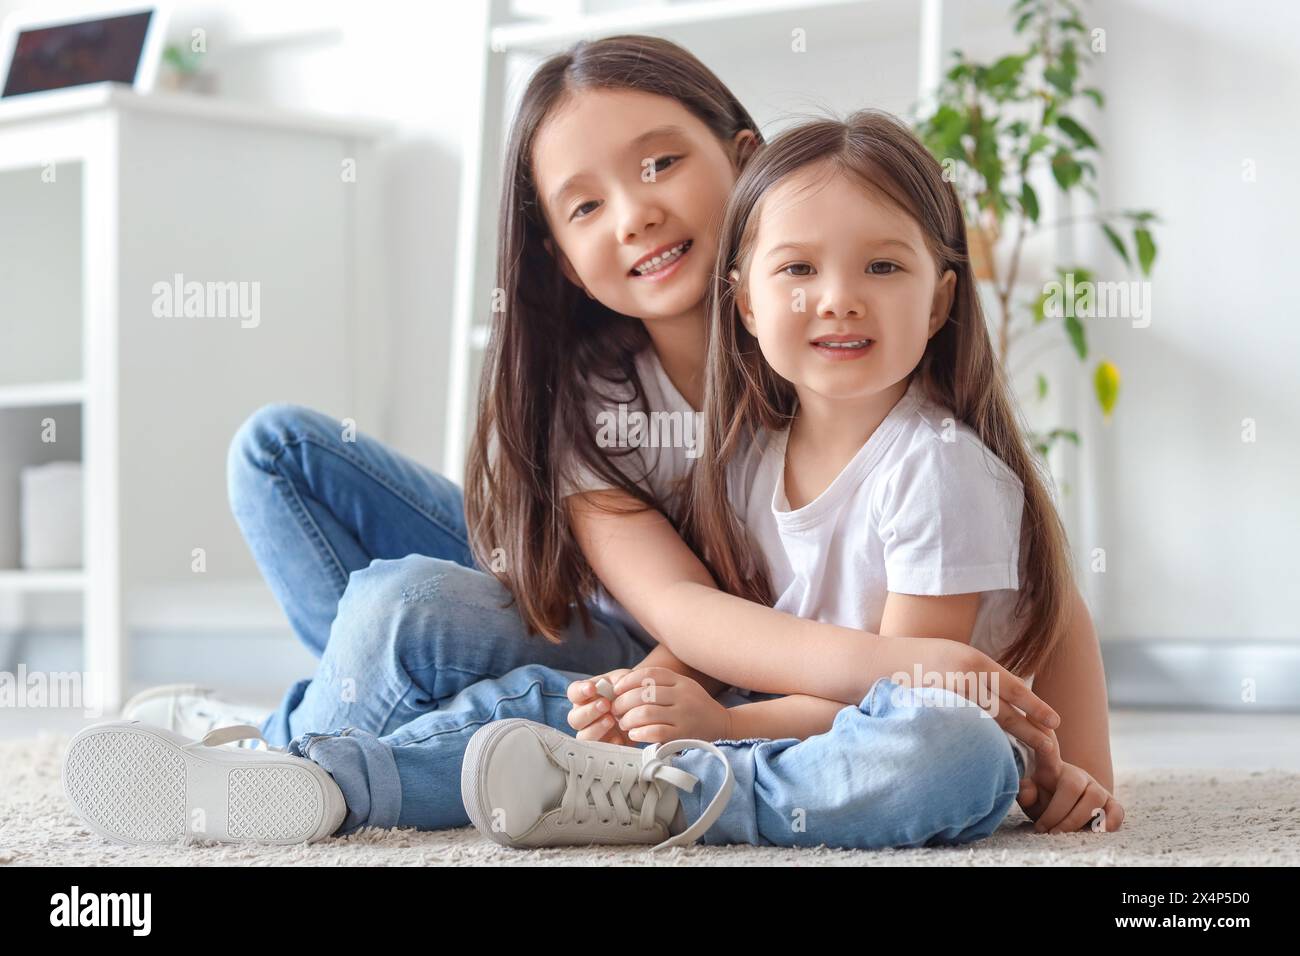 Süße kleine asiatische glückliche Schwestern, die sich zu Hause auf dem Boden umarmen Stockfoto